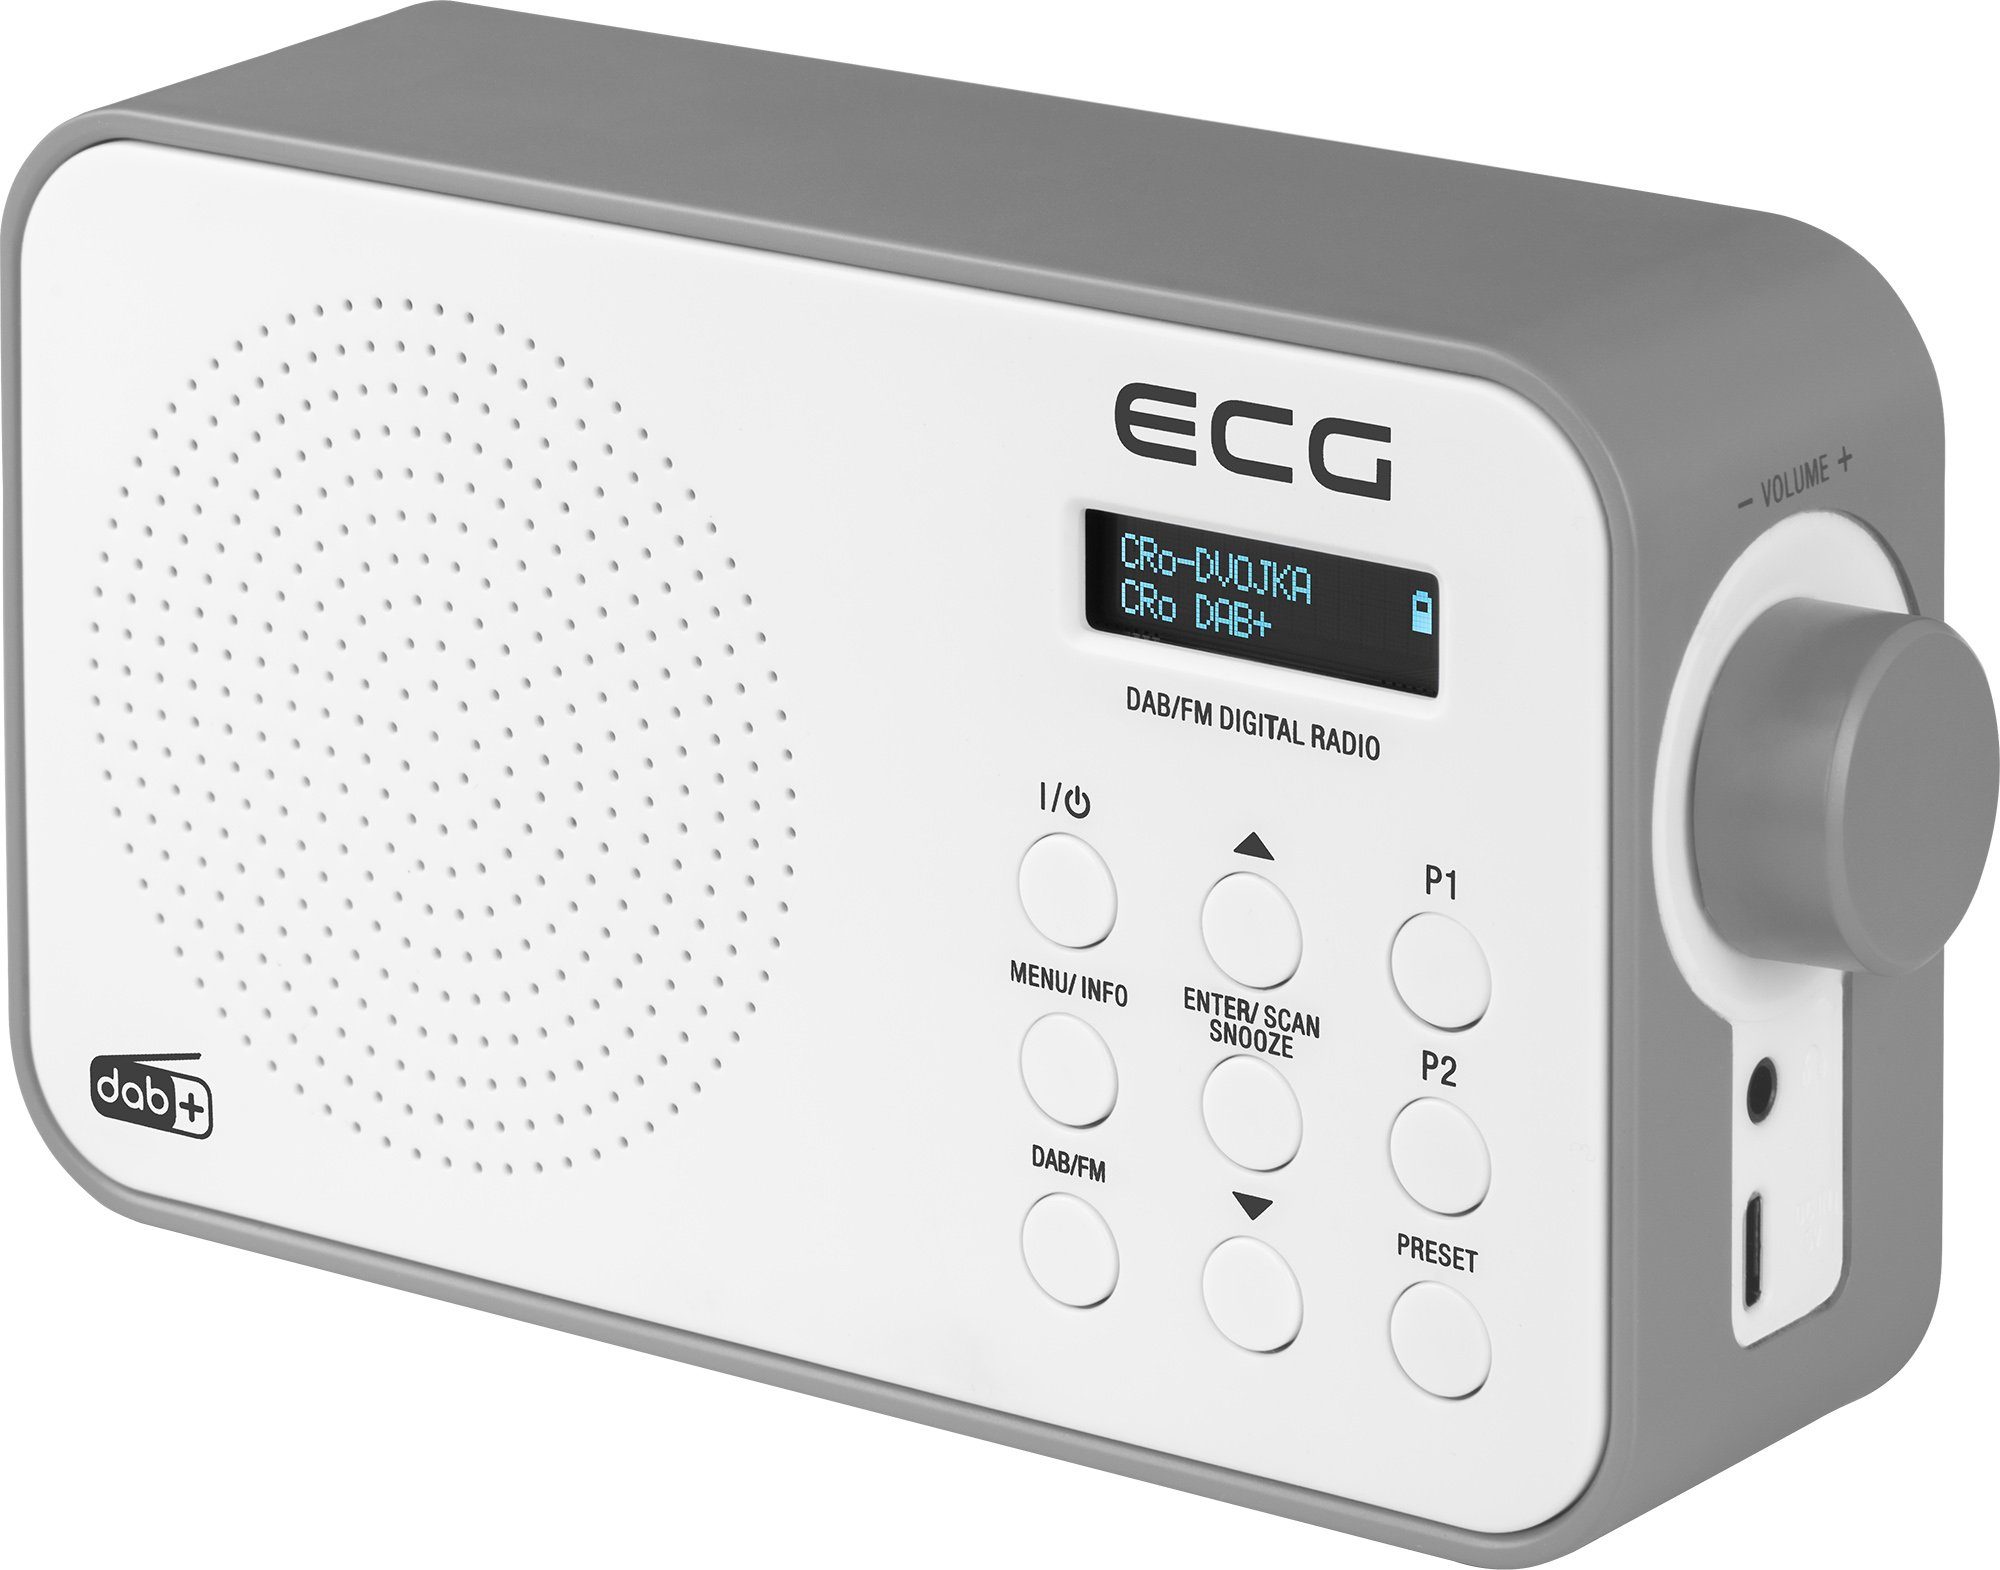 ECG RD 110 DAB Black USB, FM, 1,00 (DAB), Timer, (DAB) Wecker, FM, Digitalradio W, Tragbar, Snoozer, (Digitalradio Tragbar) DAB